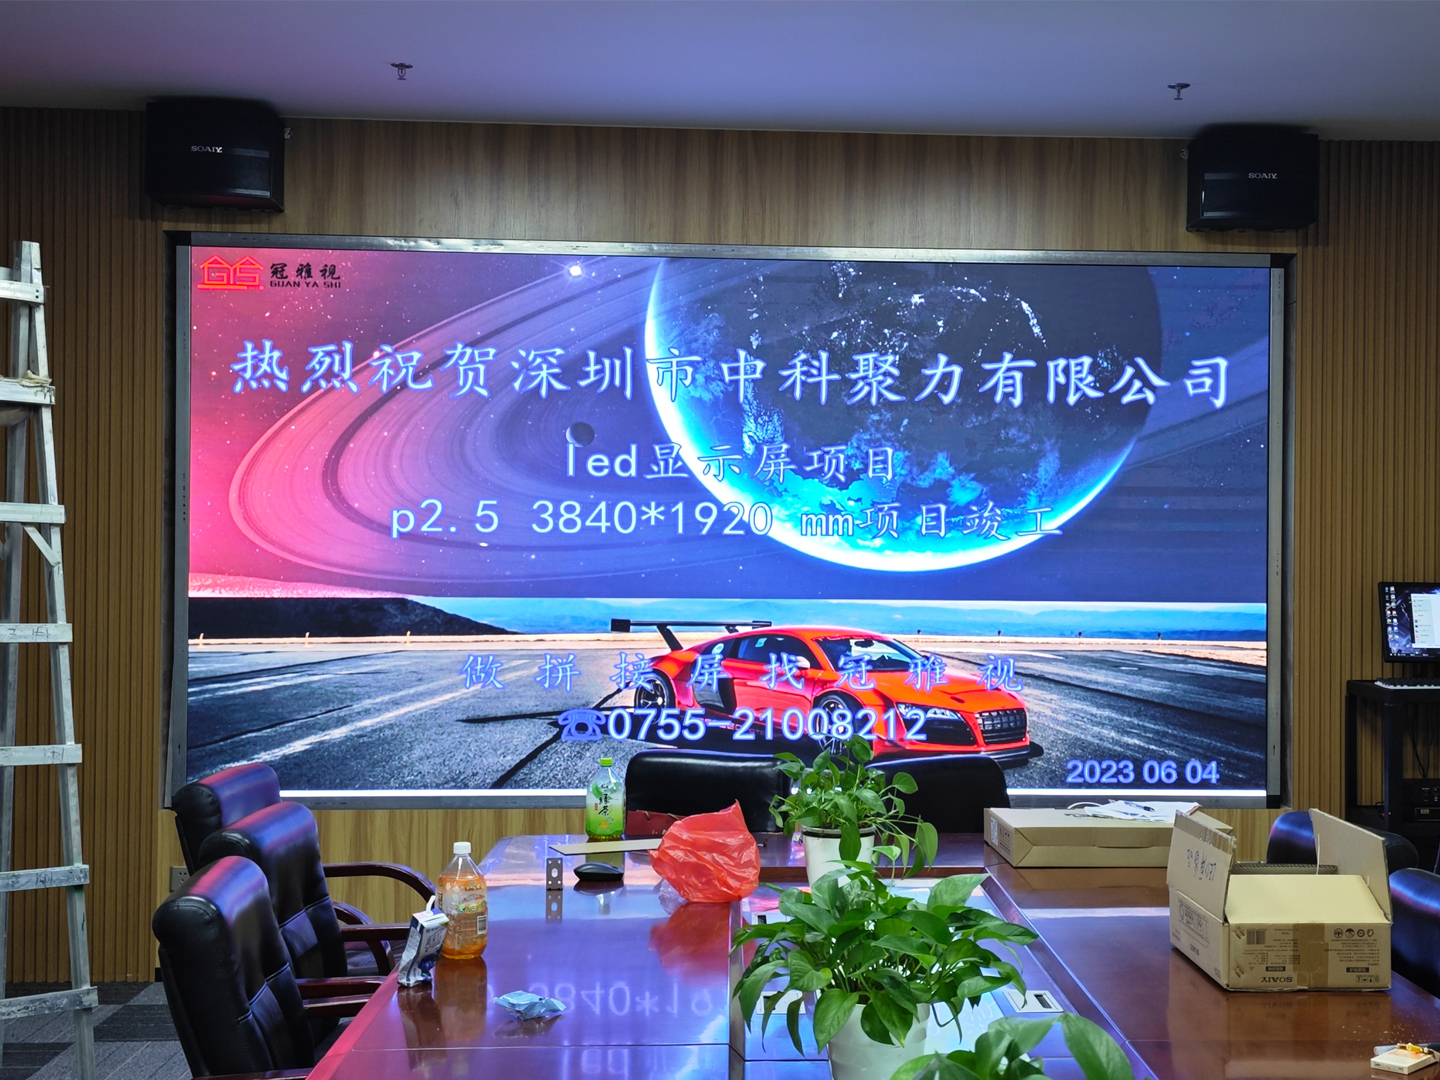 深圳市某公司LED,p2.5大屏